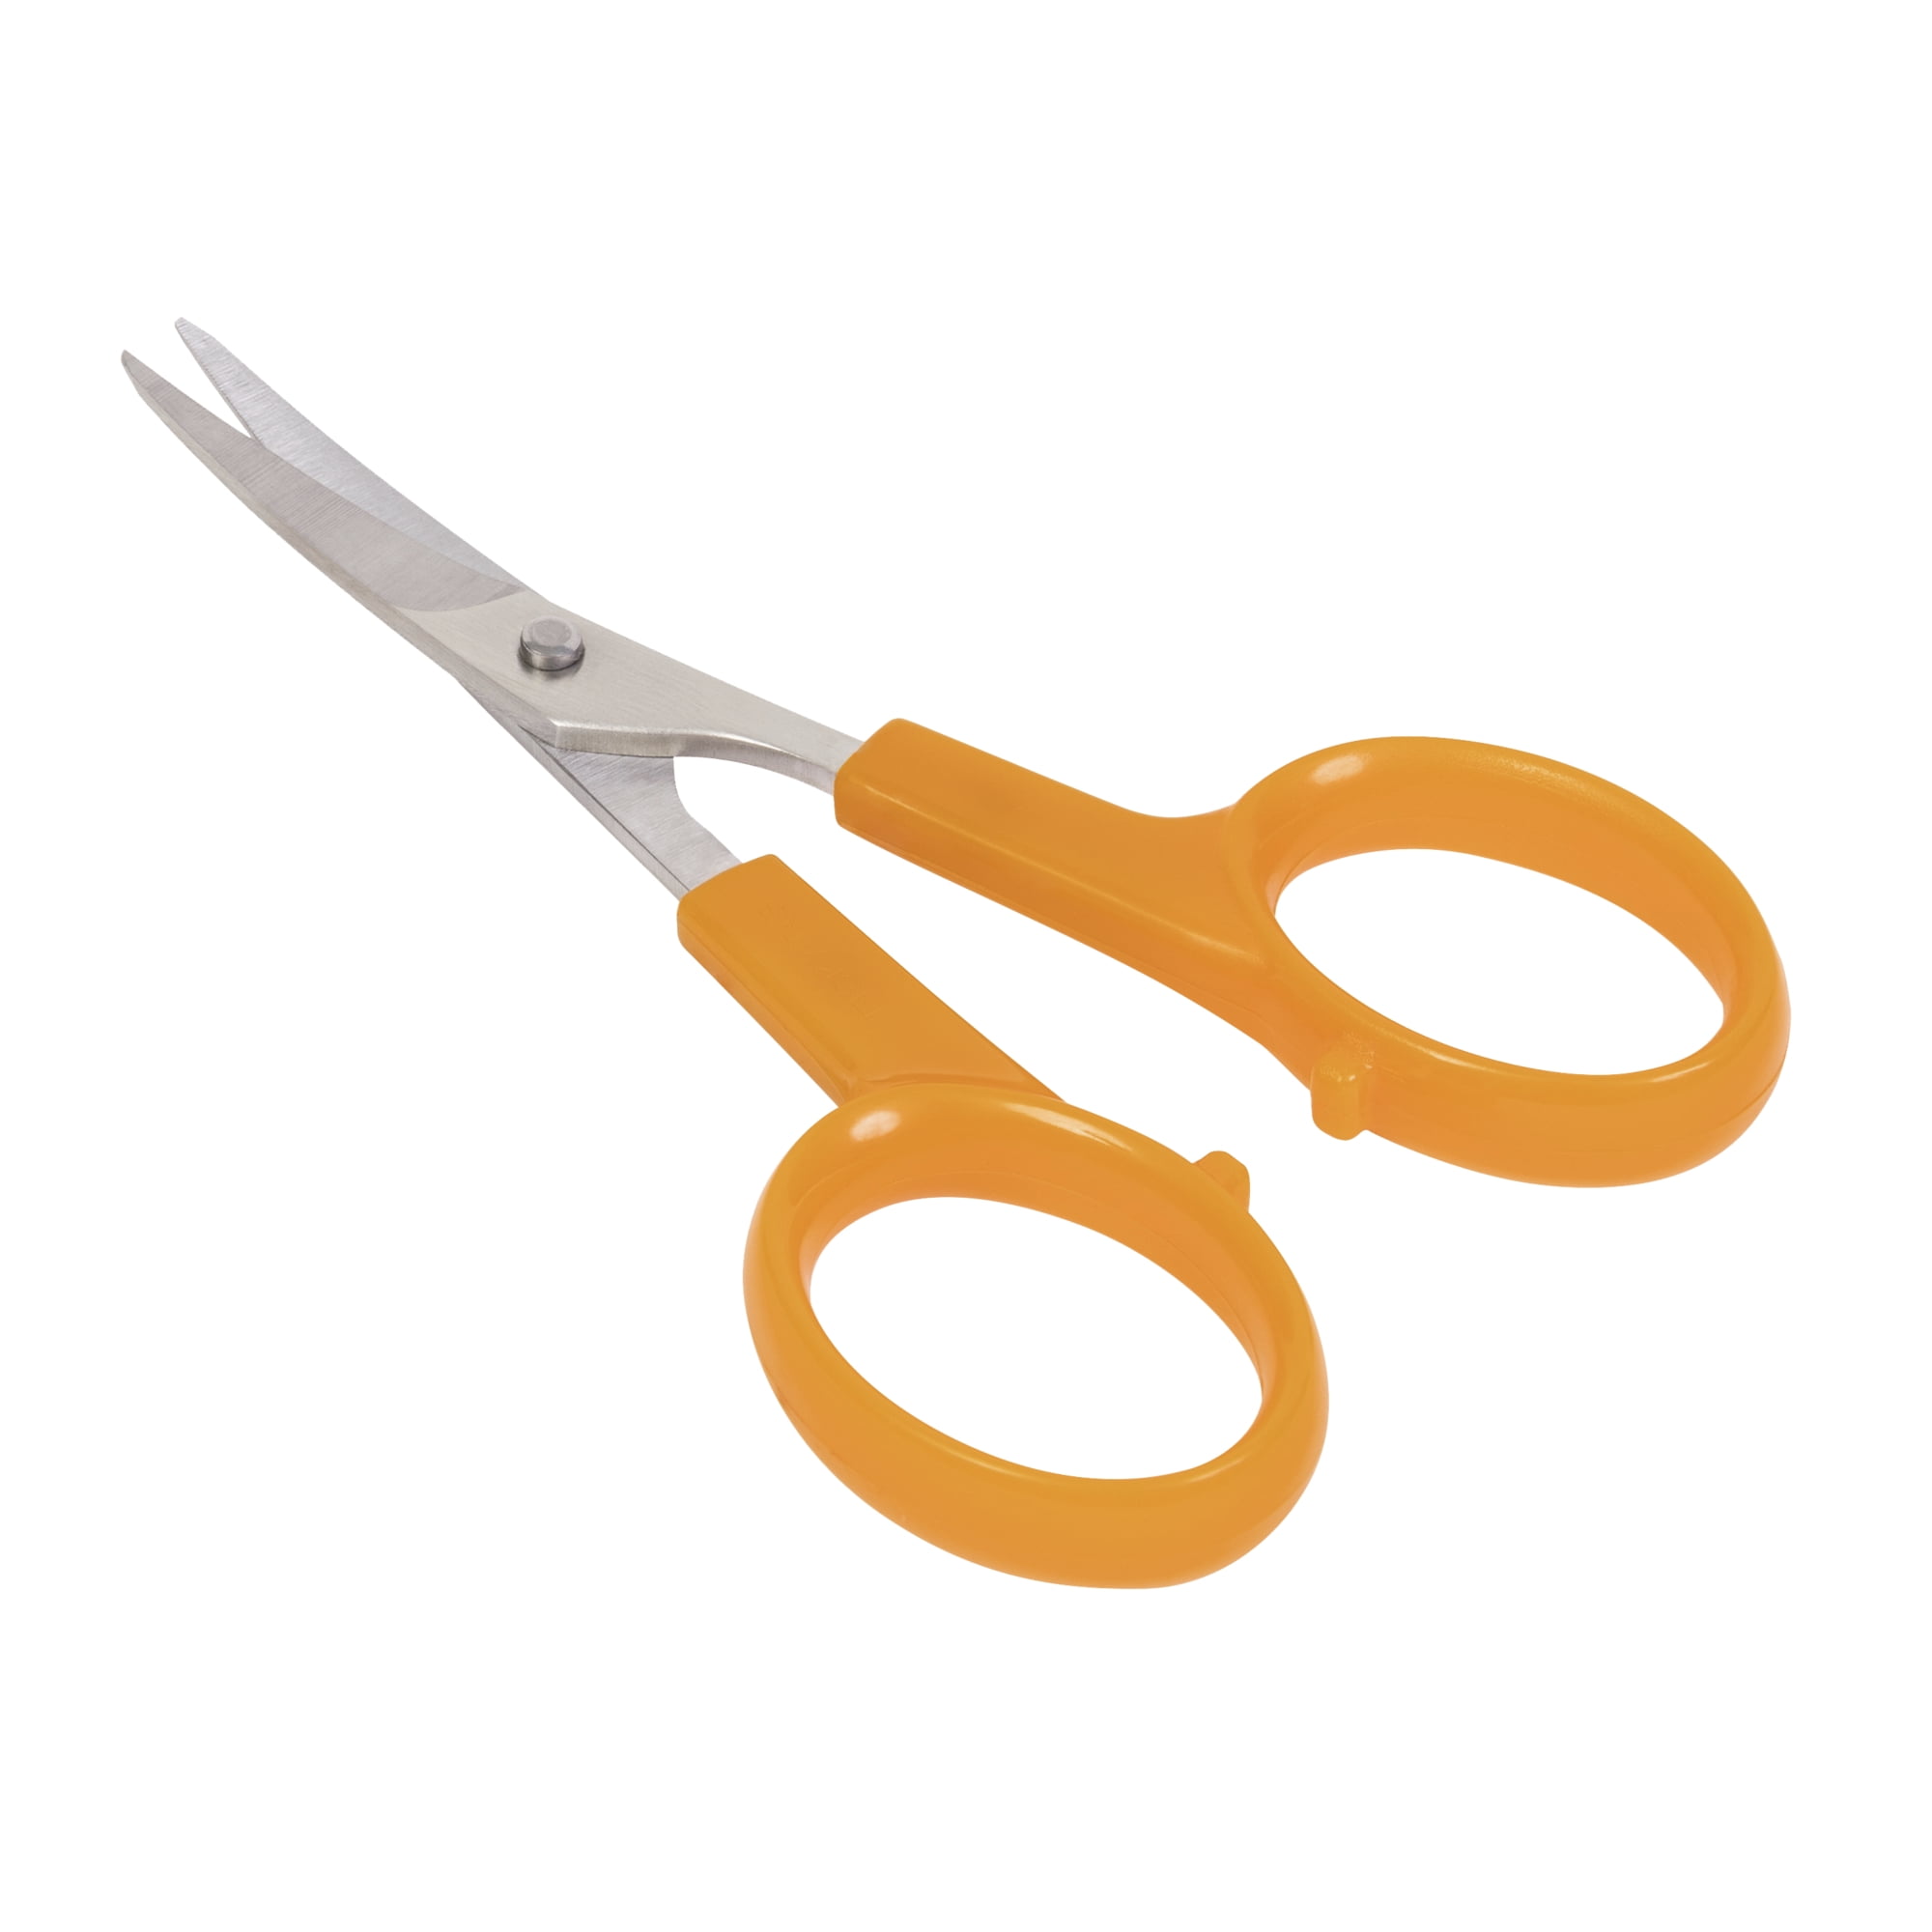 Small Fiskars Sewing Scissors